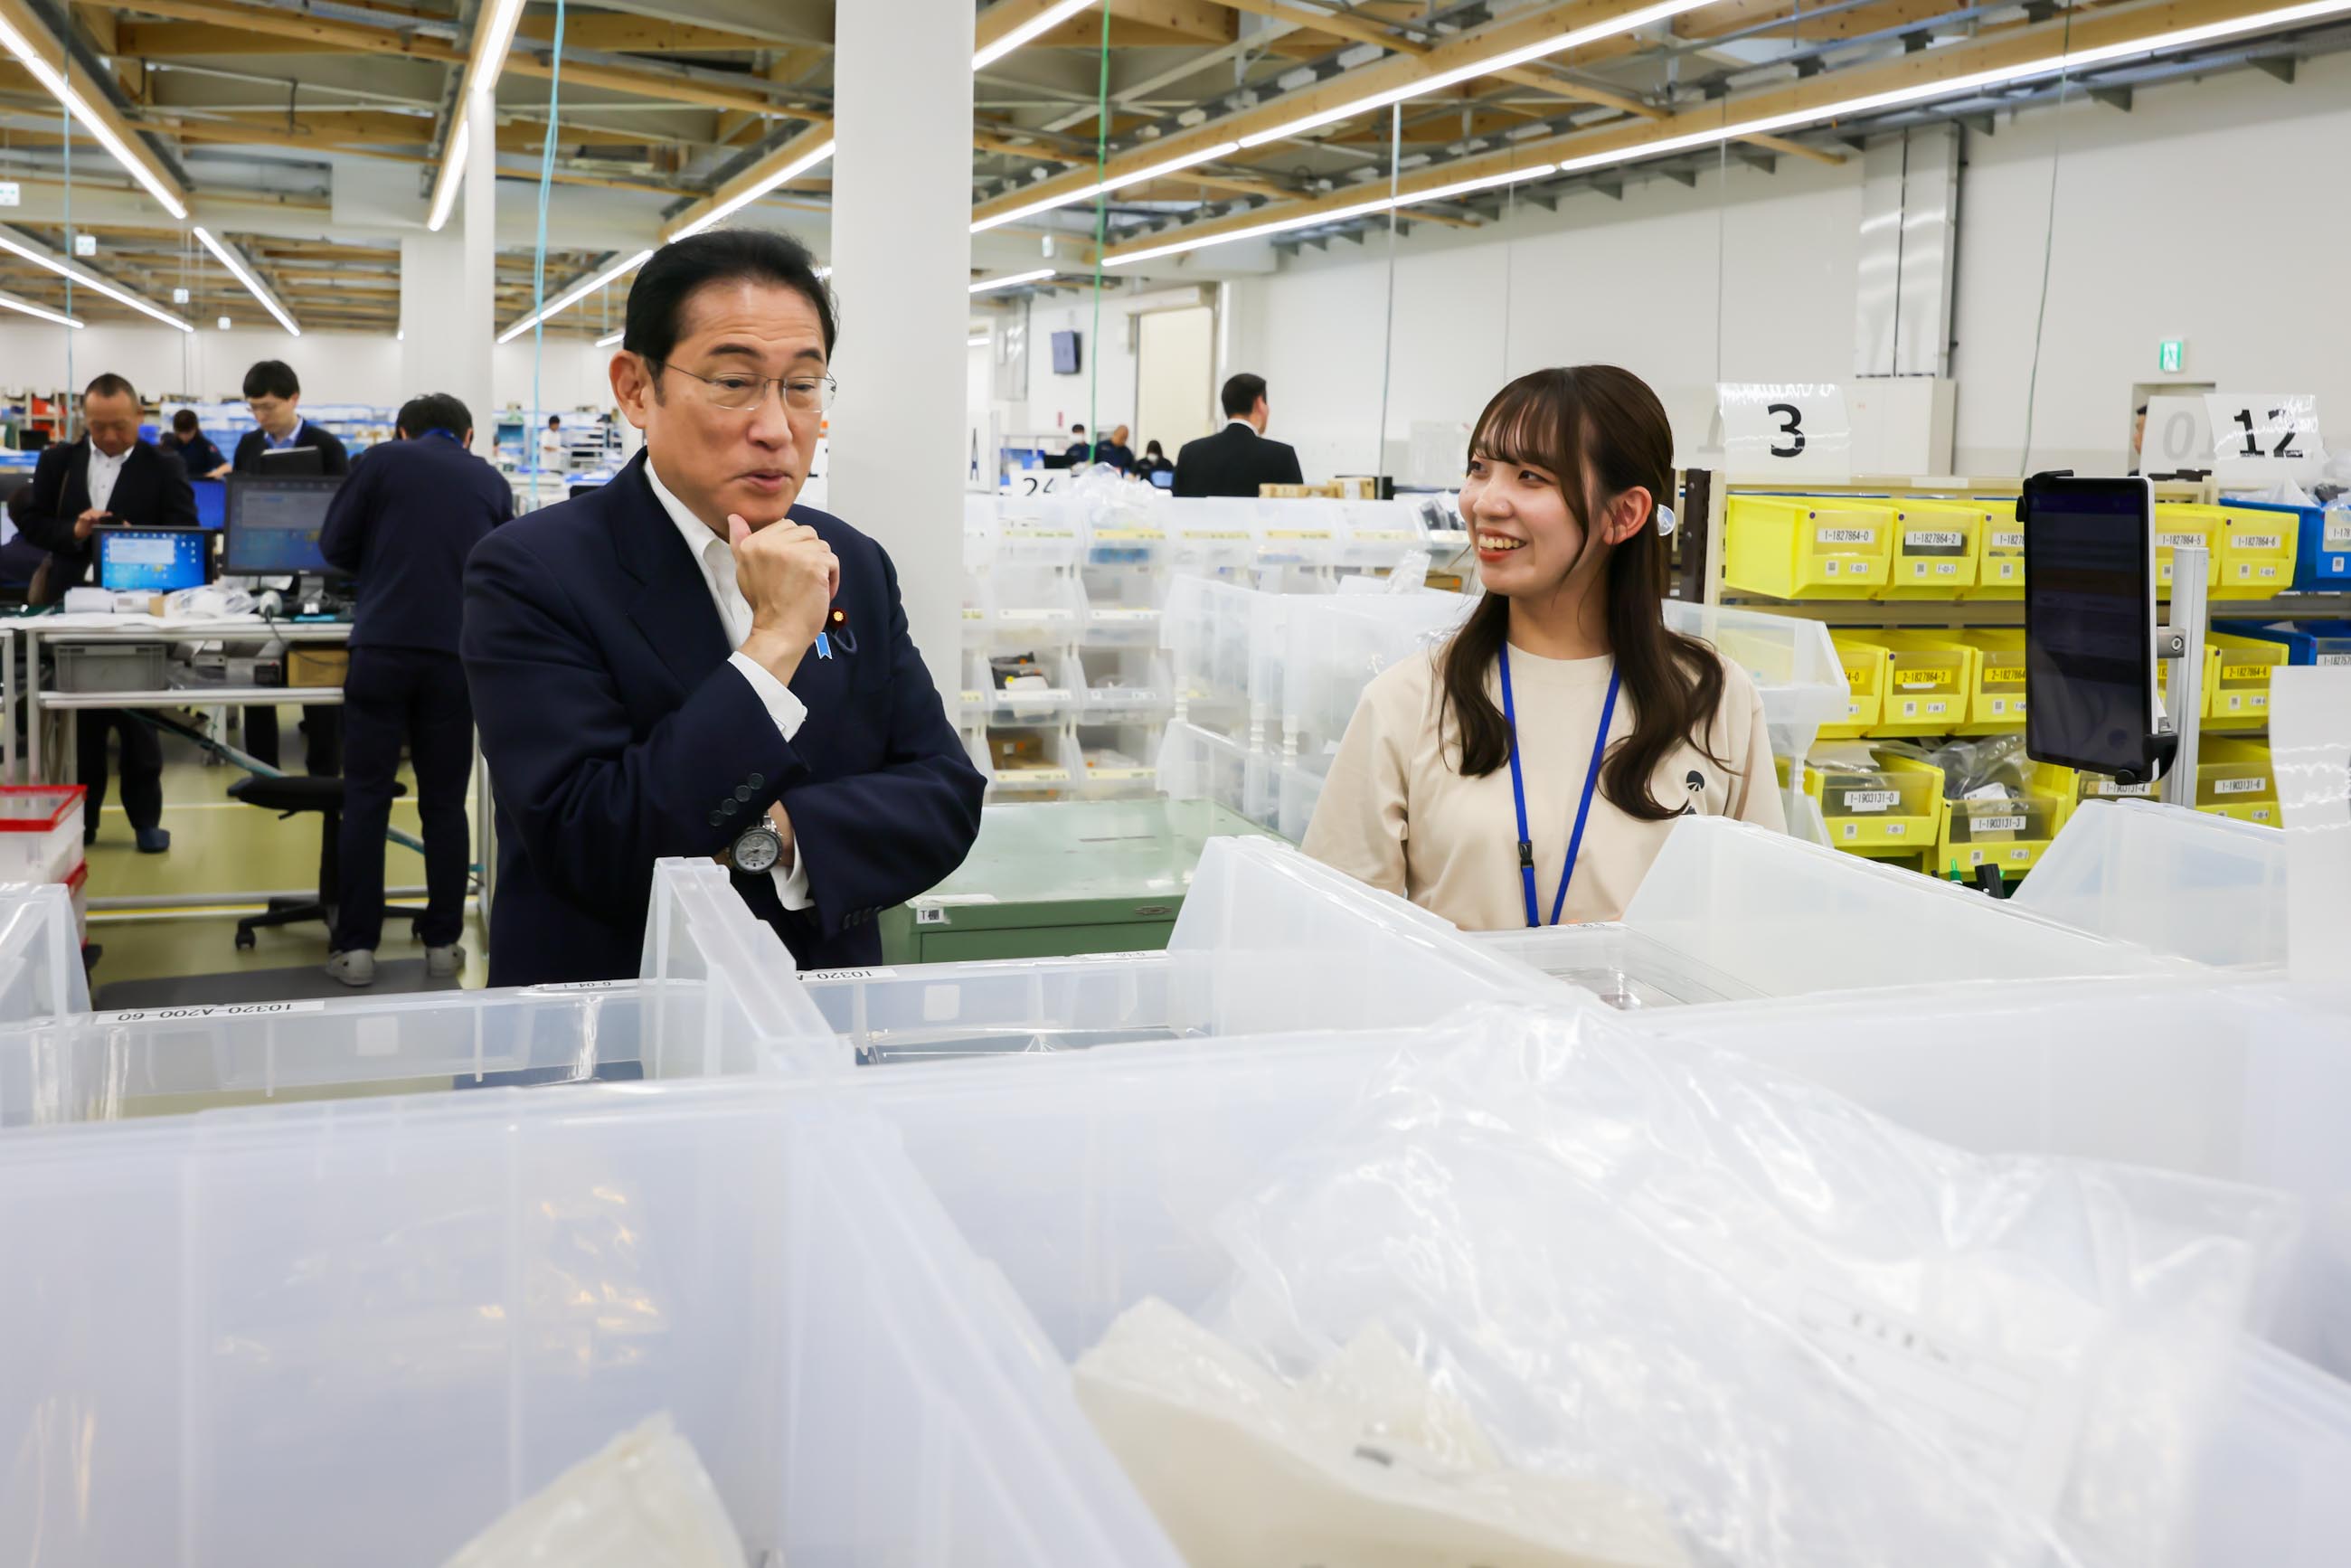 岸田首相视察一家生产电子零部件的企业6